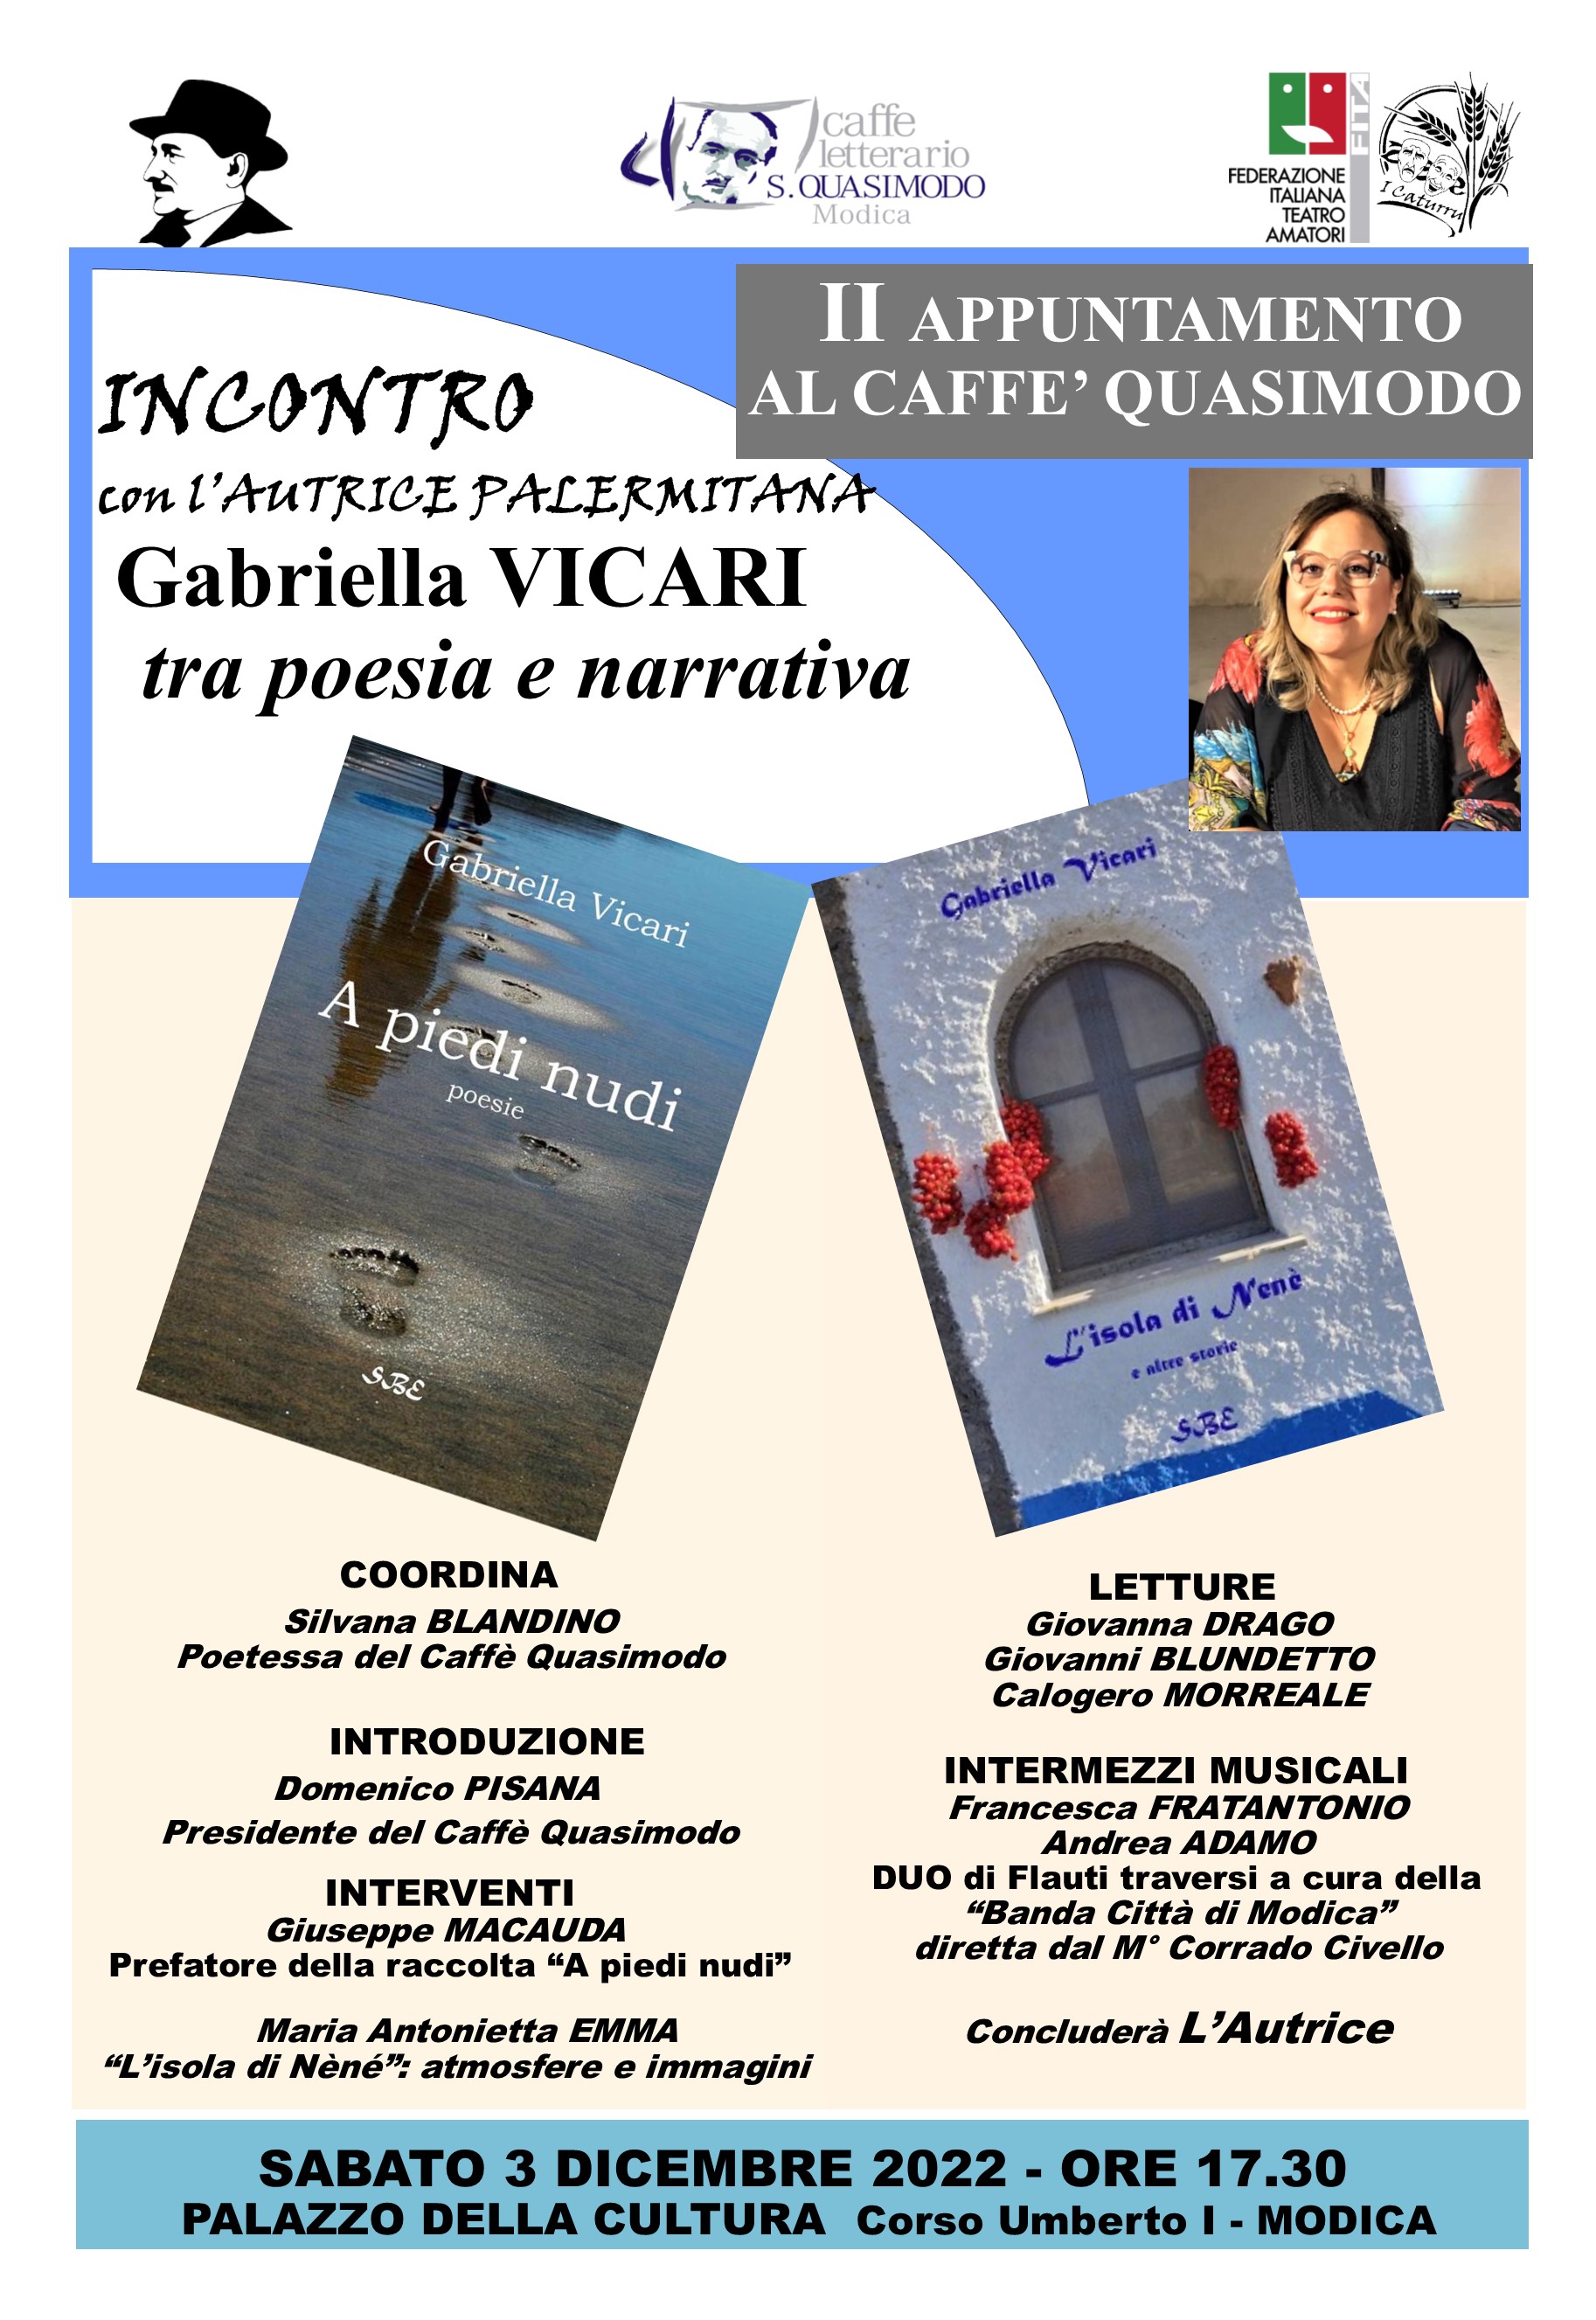 Al Caffè Letterario Quasimodo di Modica serata dedicata alla poetessa palermitana Gabriella Vicari  